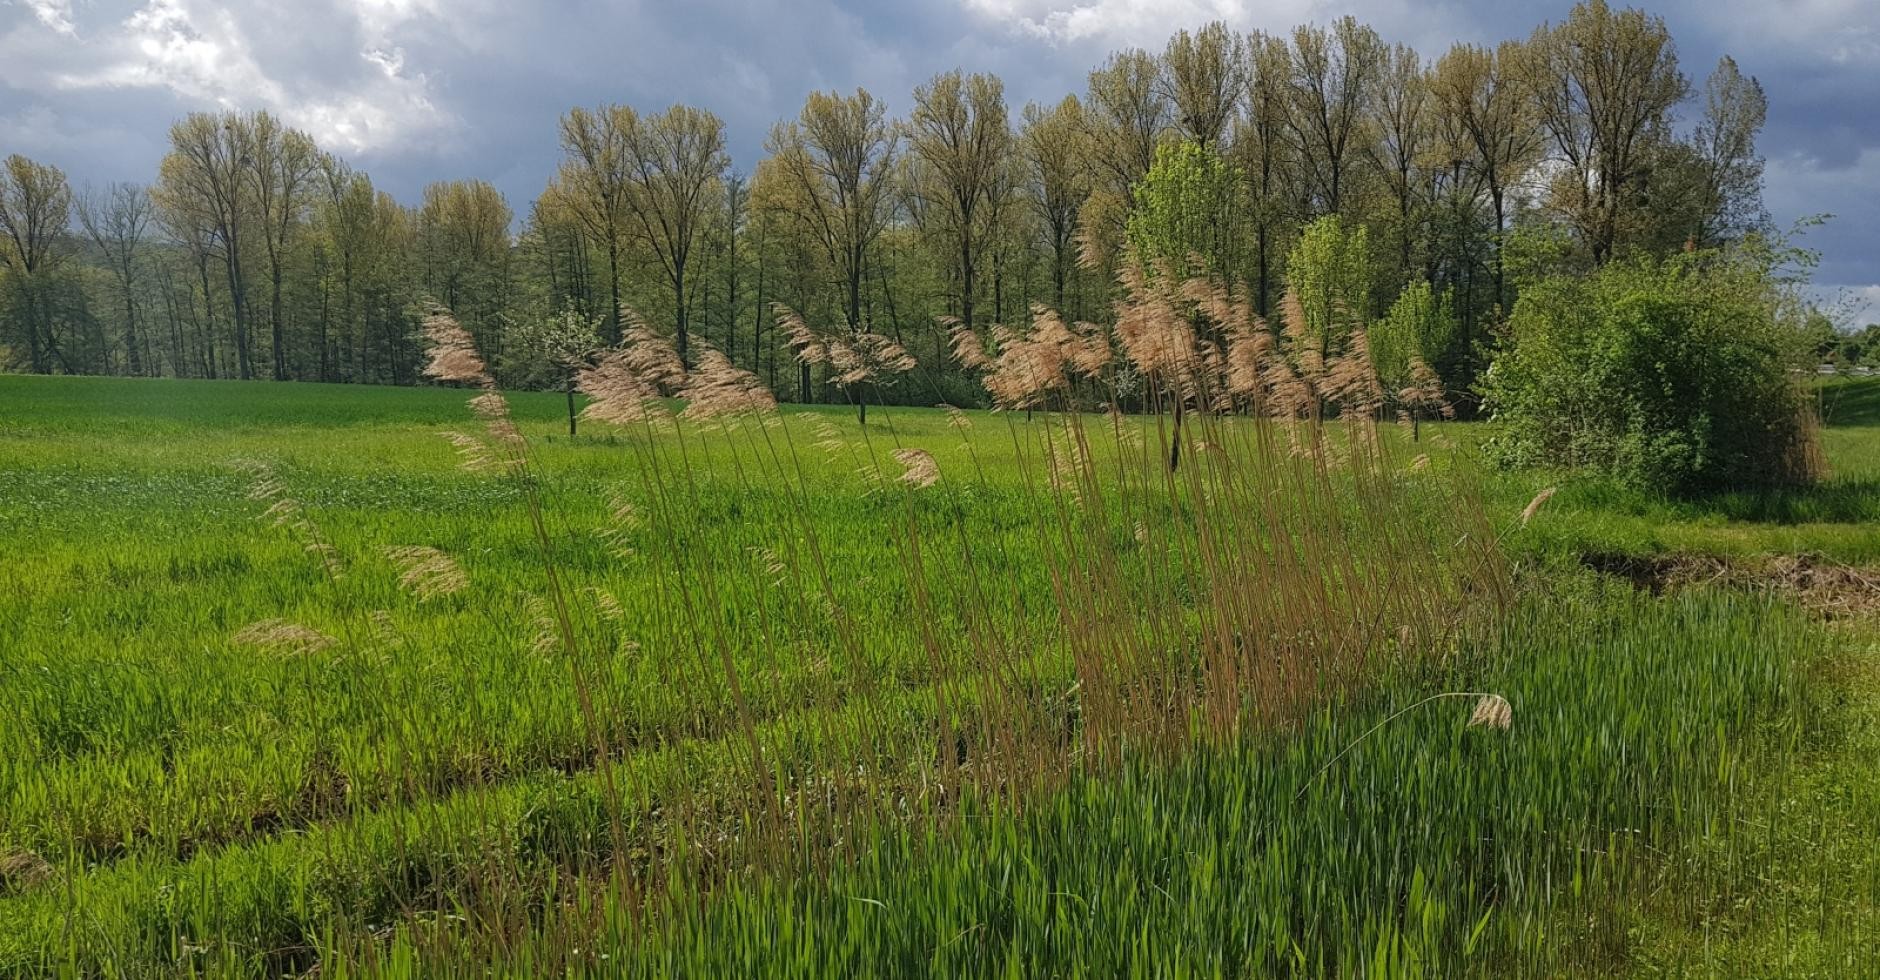 Erlenwäldele im Frühling, im Vordergrund der Rohrbach